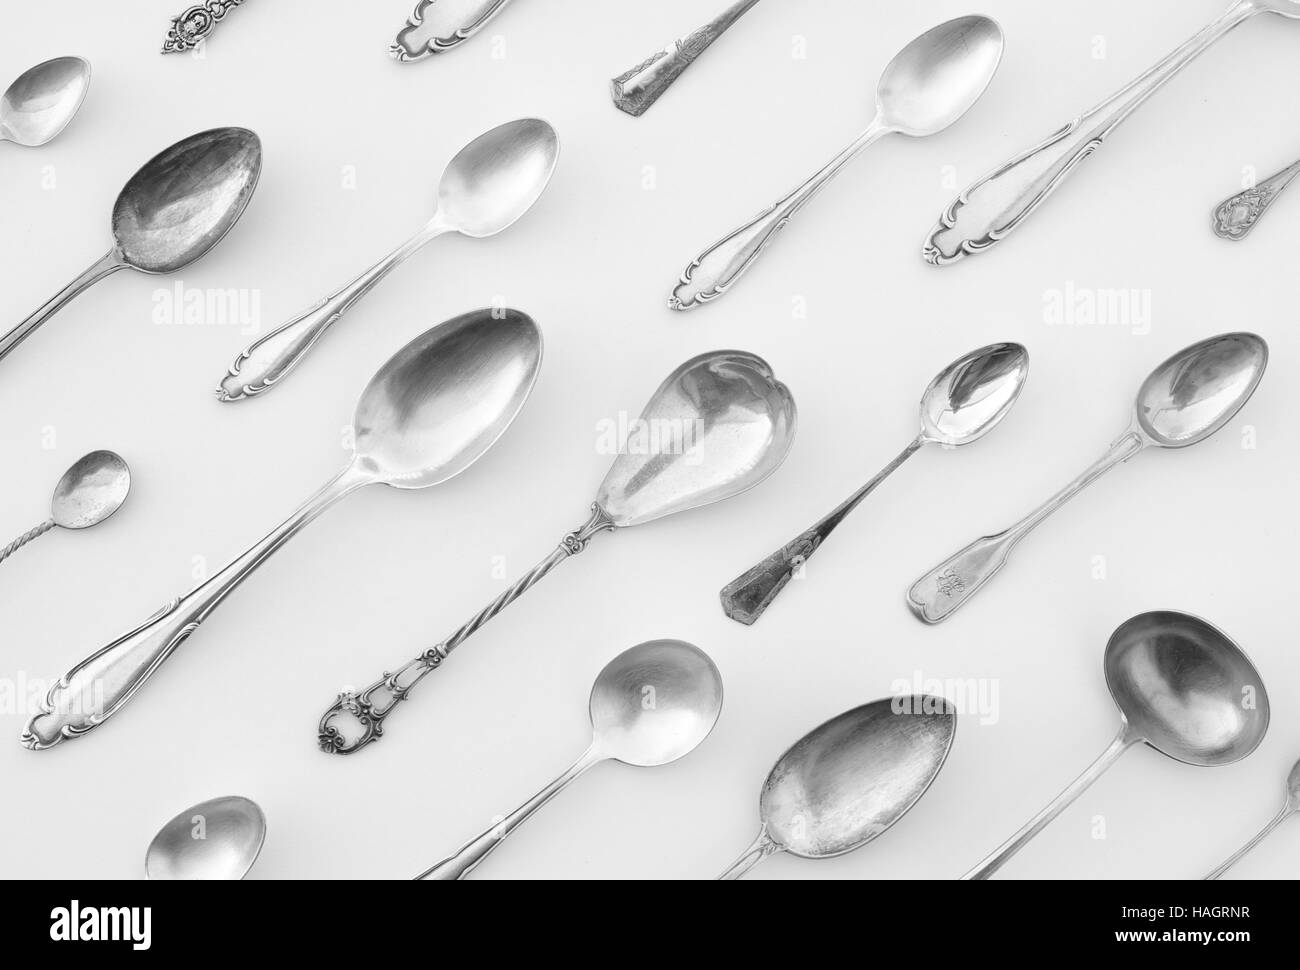 spoon pattern dinner concept - beautiful flatware, fancy silver cutlery Stock Photo